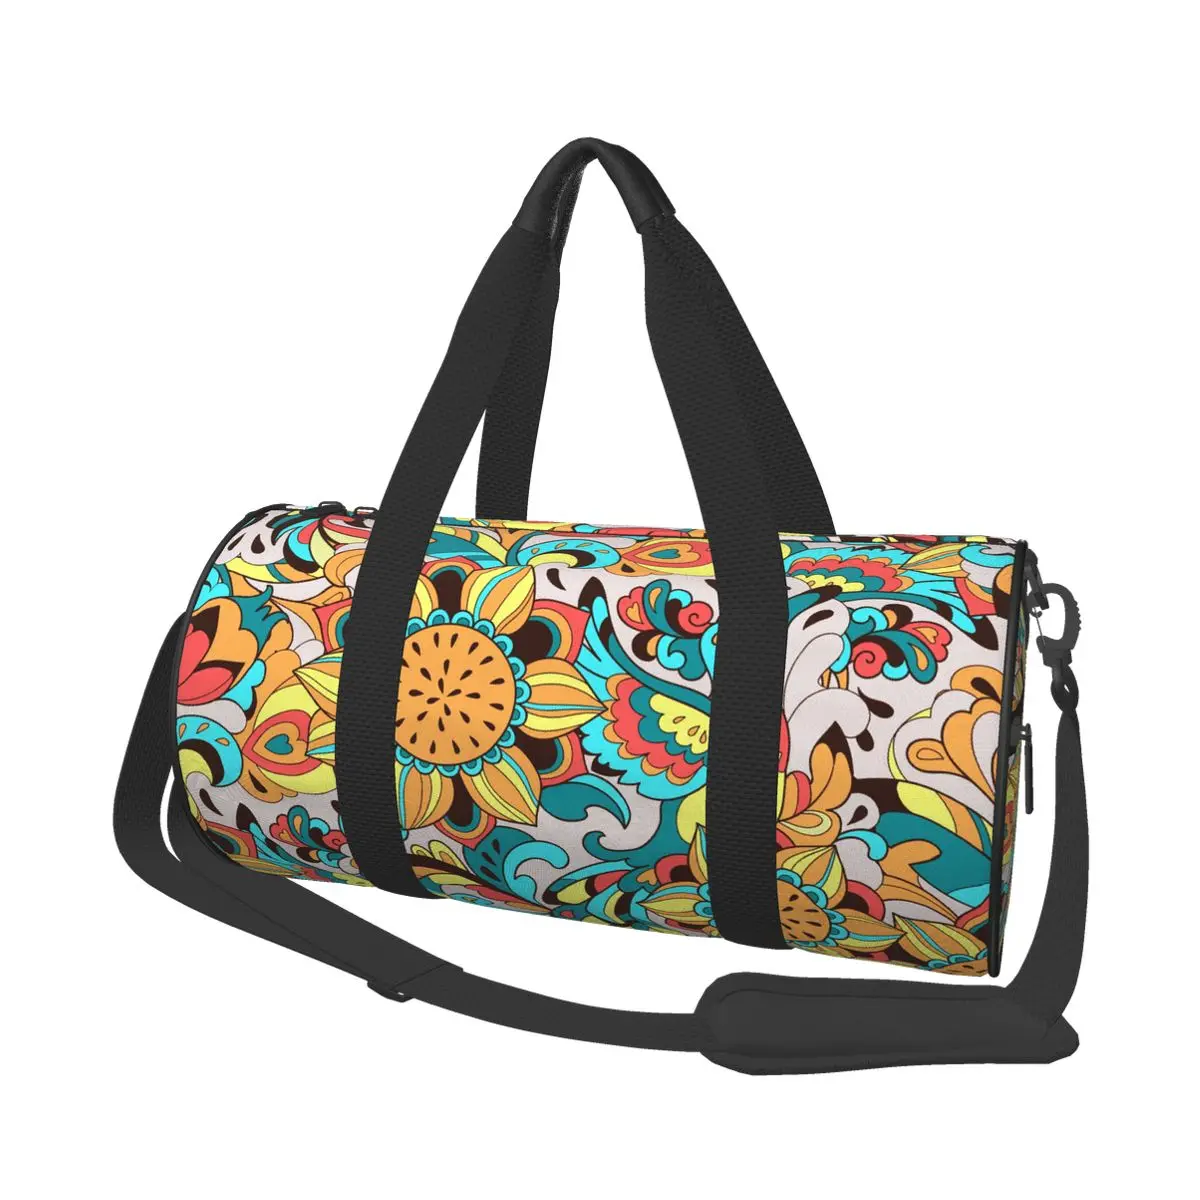 

Дорожная сумка с рисунком птицы Феникс и подсолнуха, вместительная сумка для занятий йогой, Спортивная тренировочная сумка для фитнеса, 2021